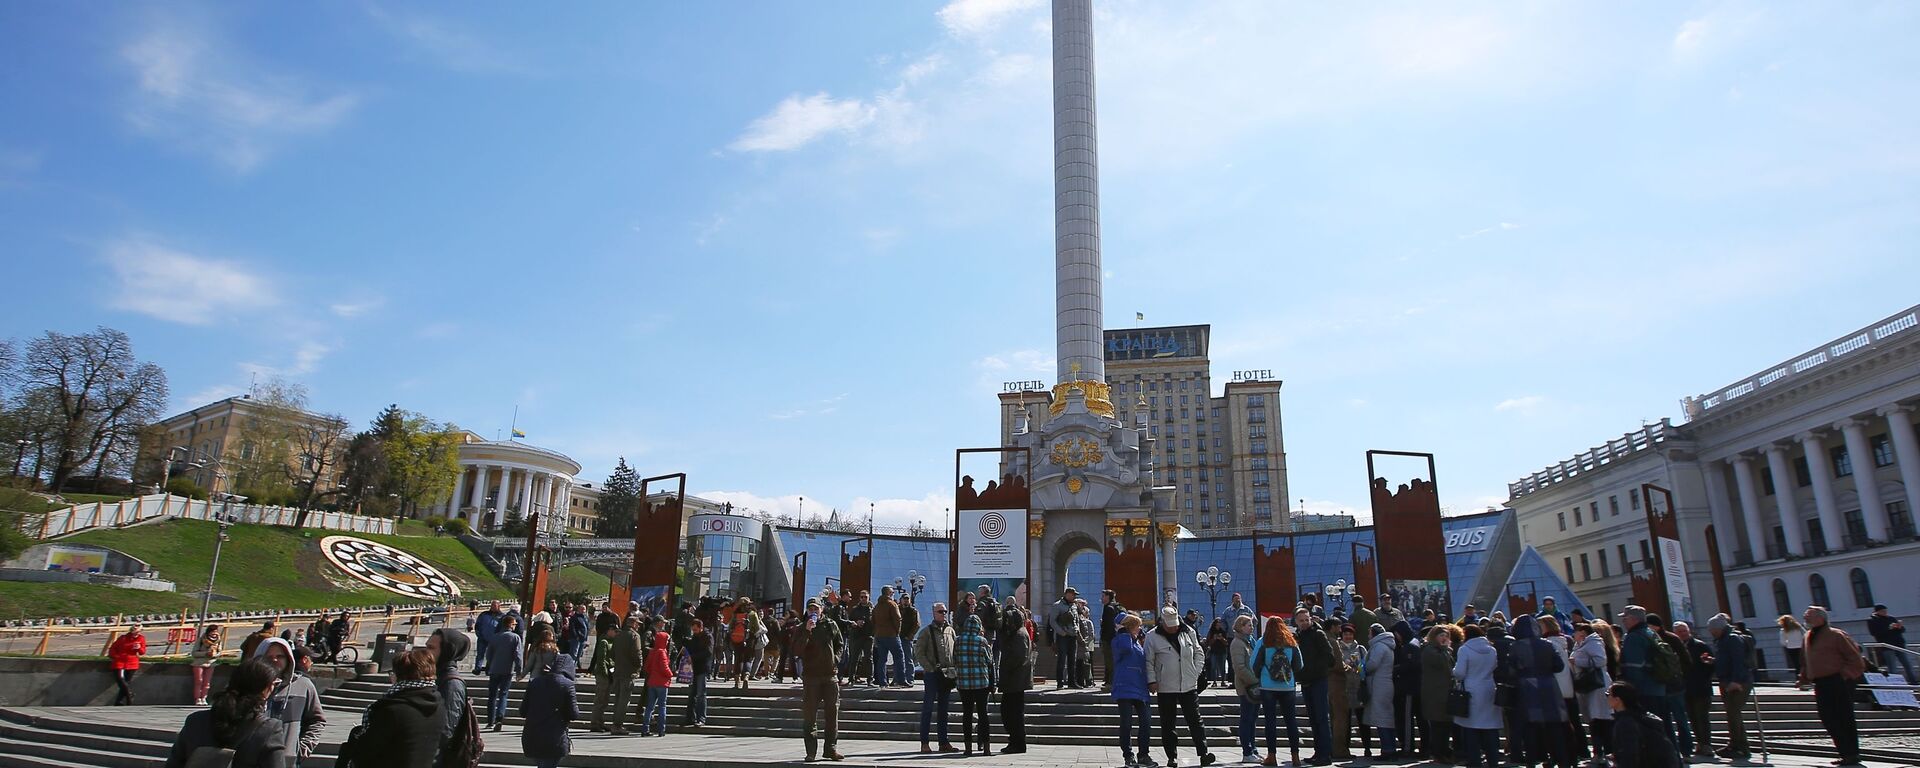 Акция в поддержку Порошенко в Киеве - Sputnik Արմենիա, 1920, 19.08.2021